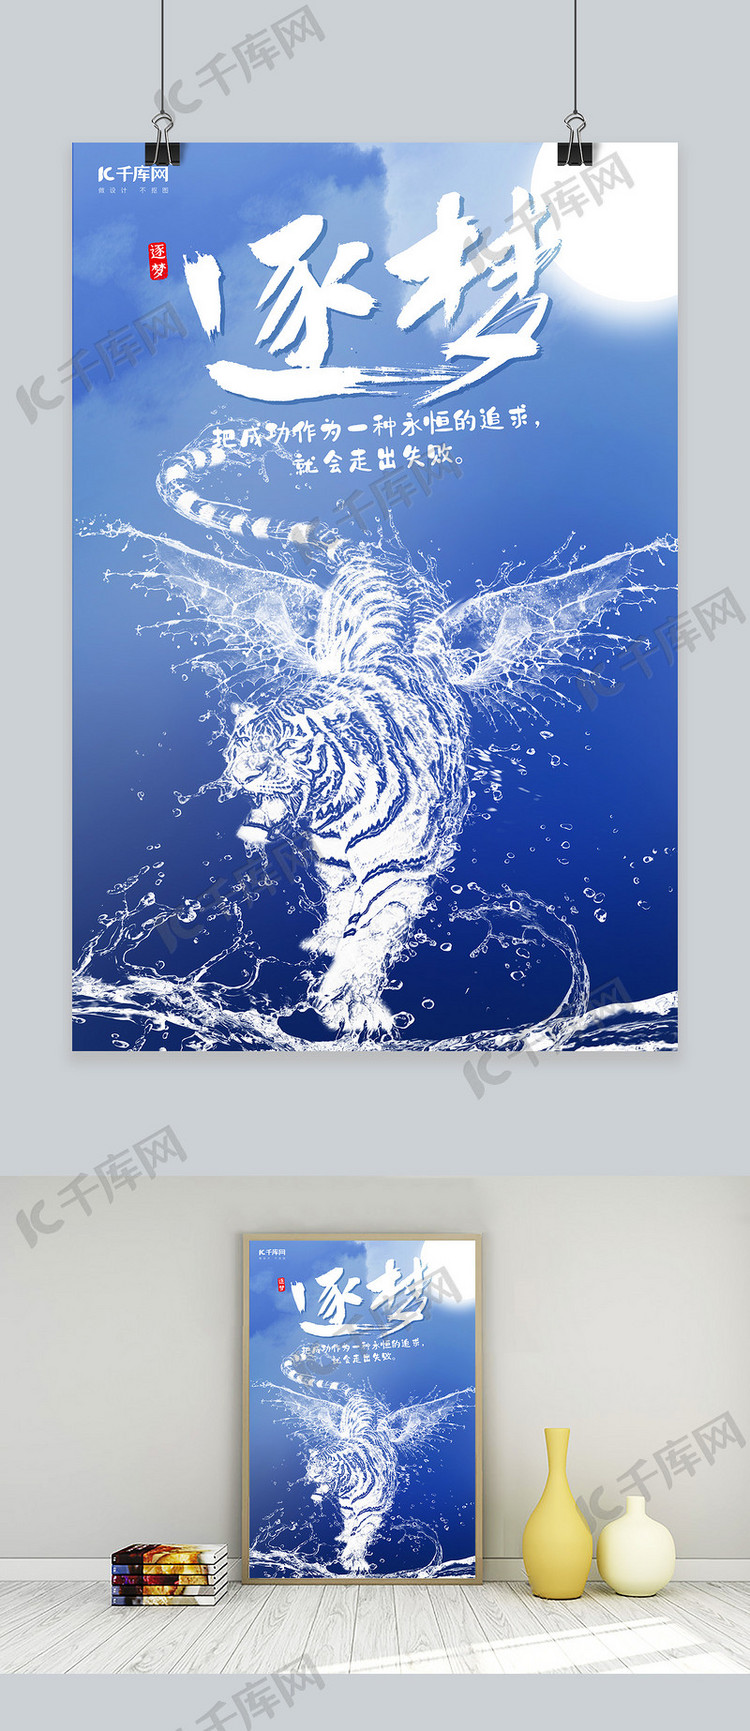 创意海洋之灵老虎逐梦励志海报水形物语